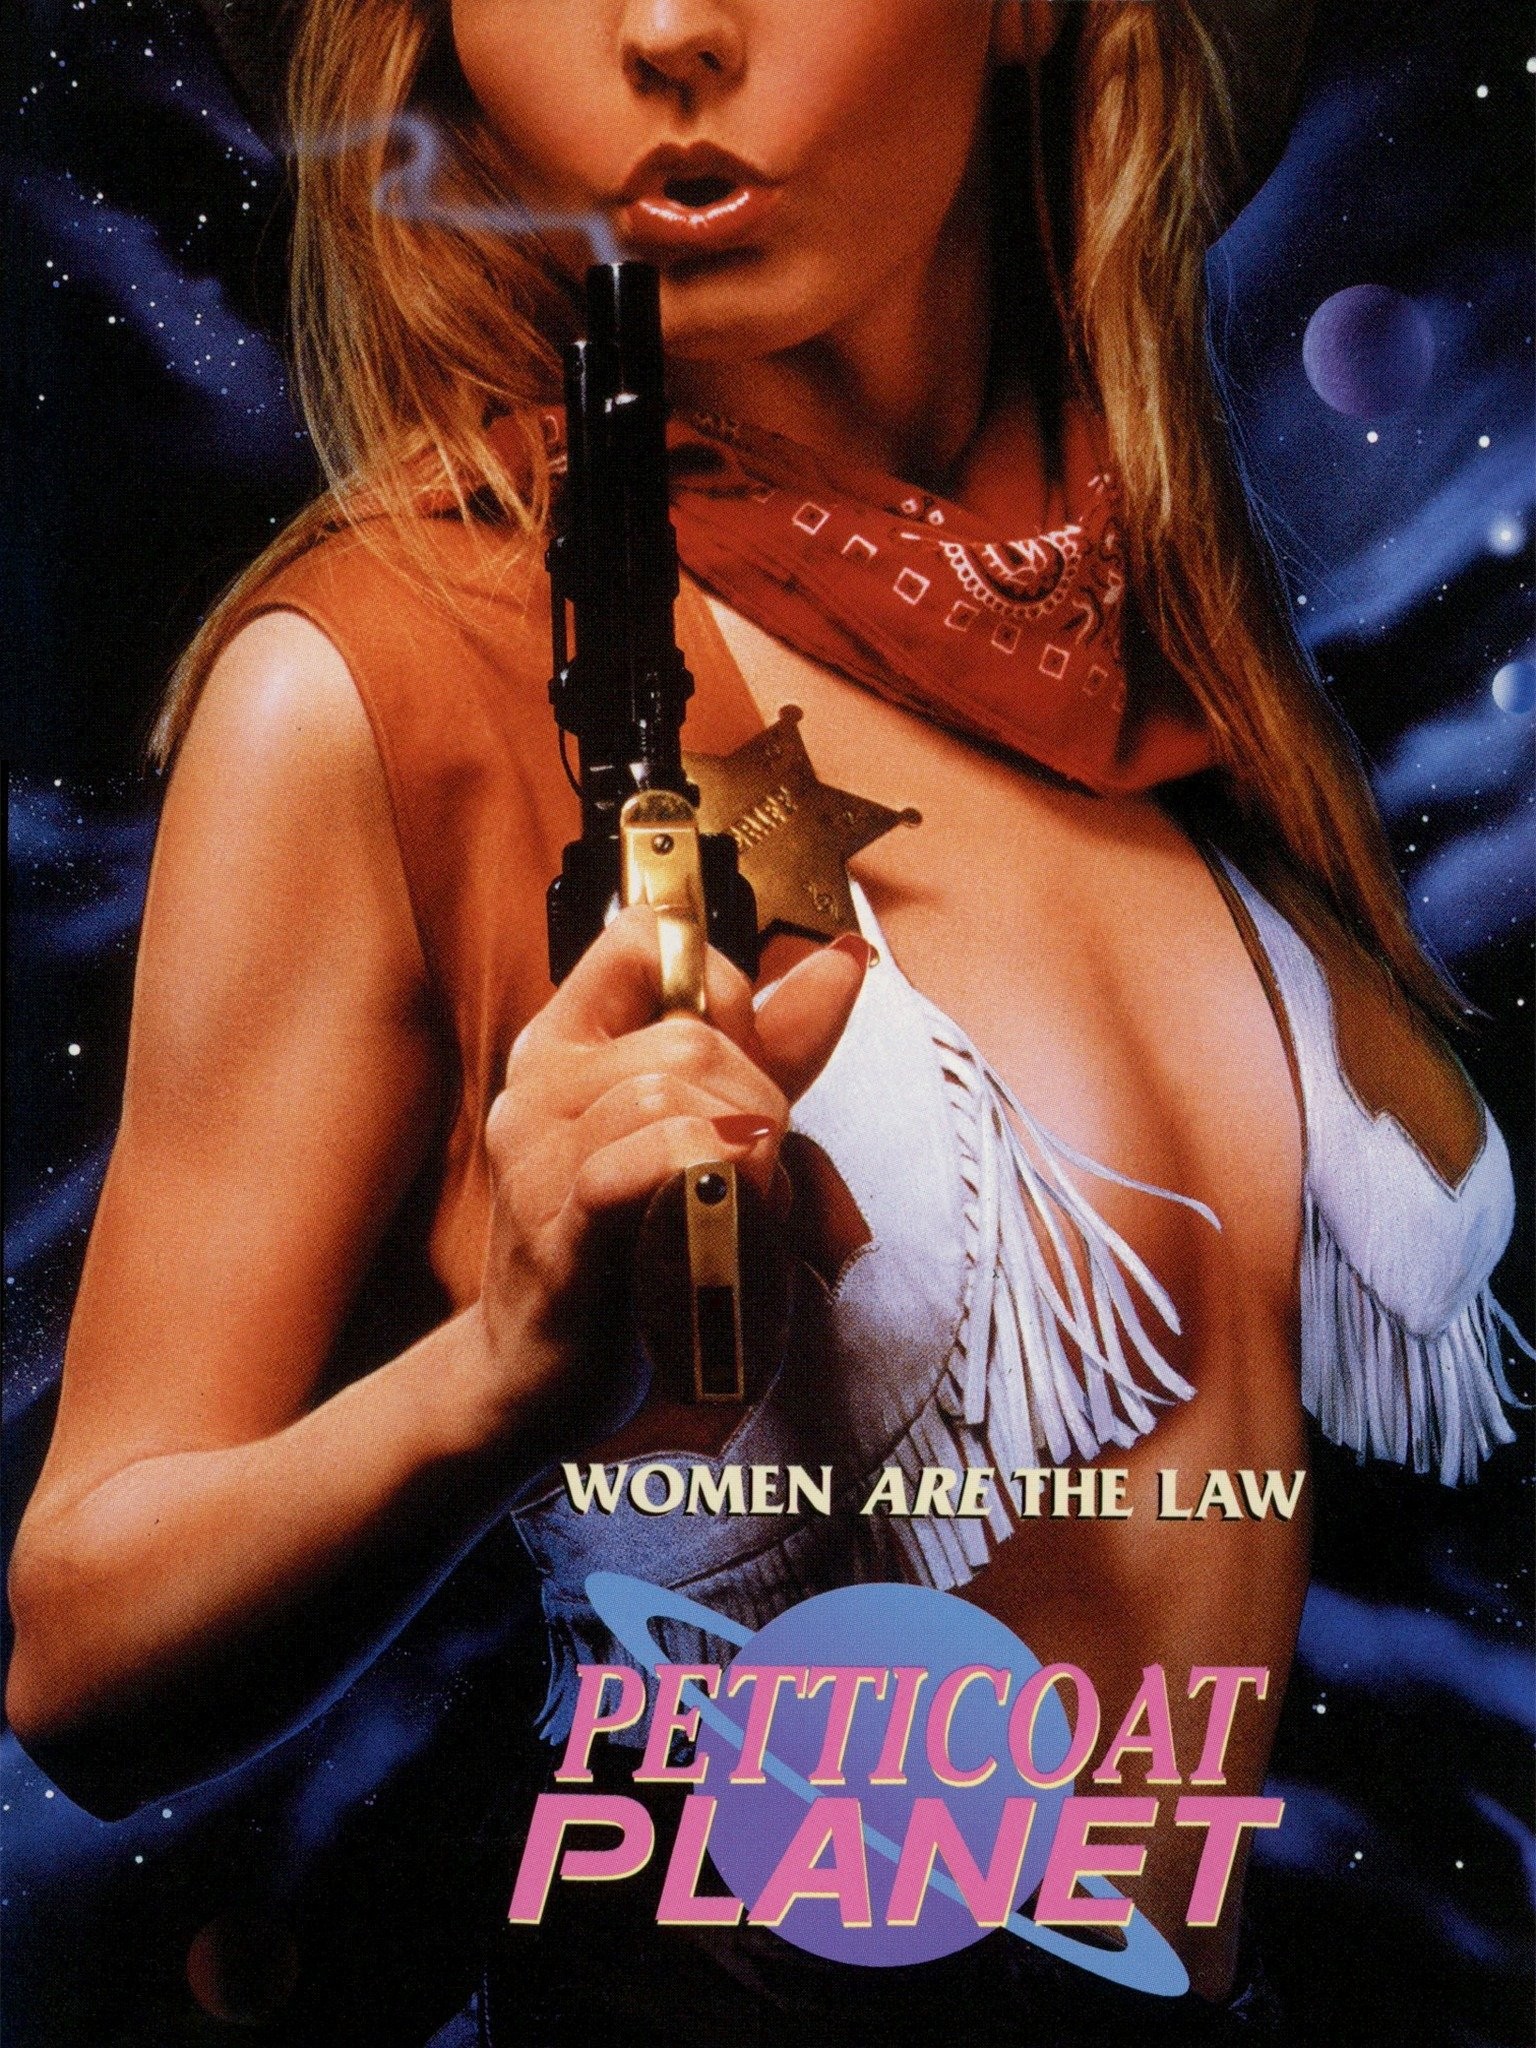 Petticoat planet movie